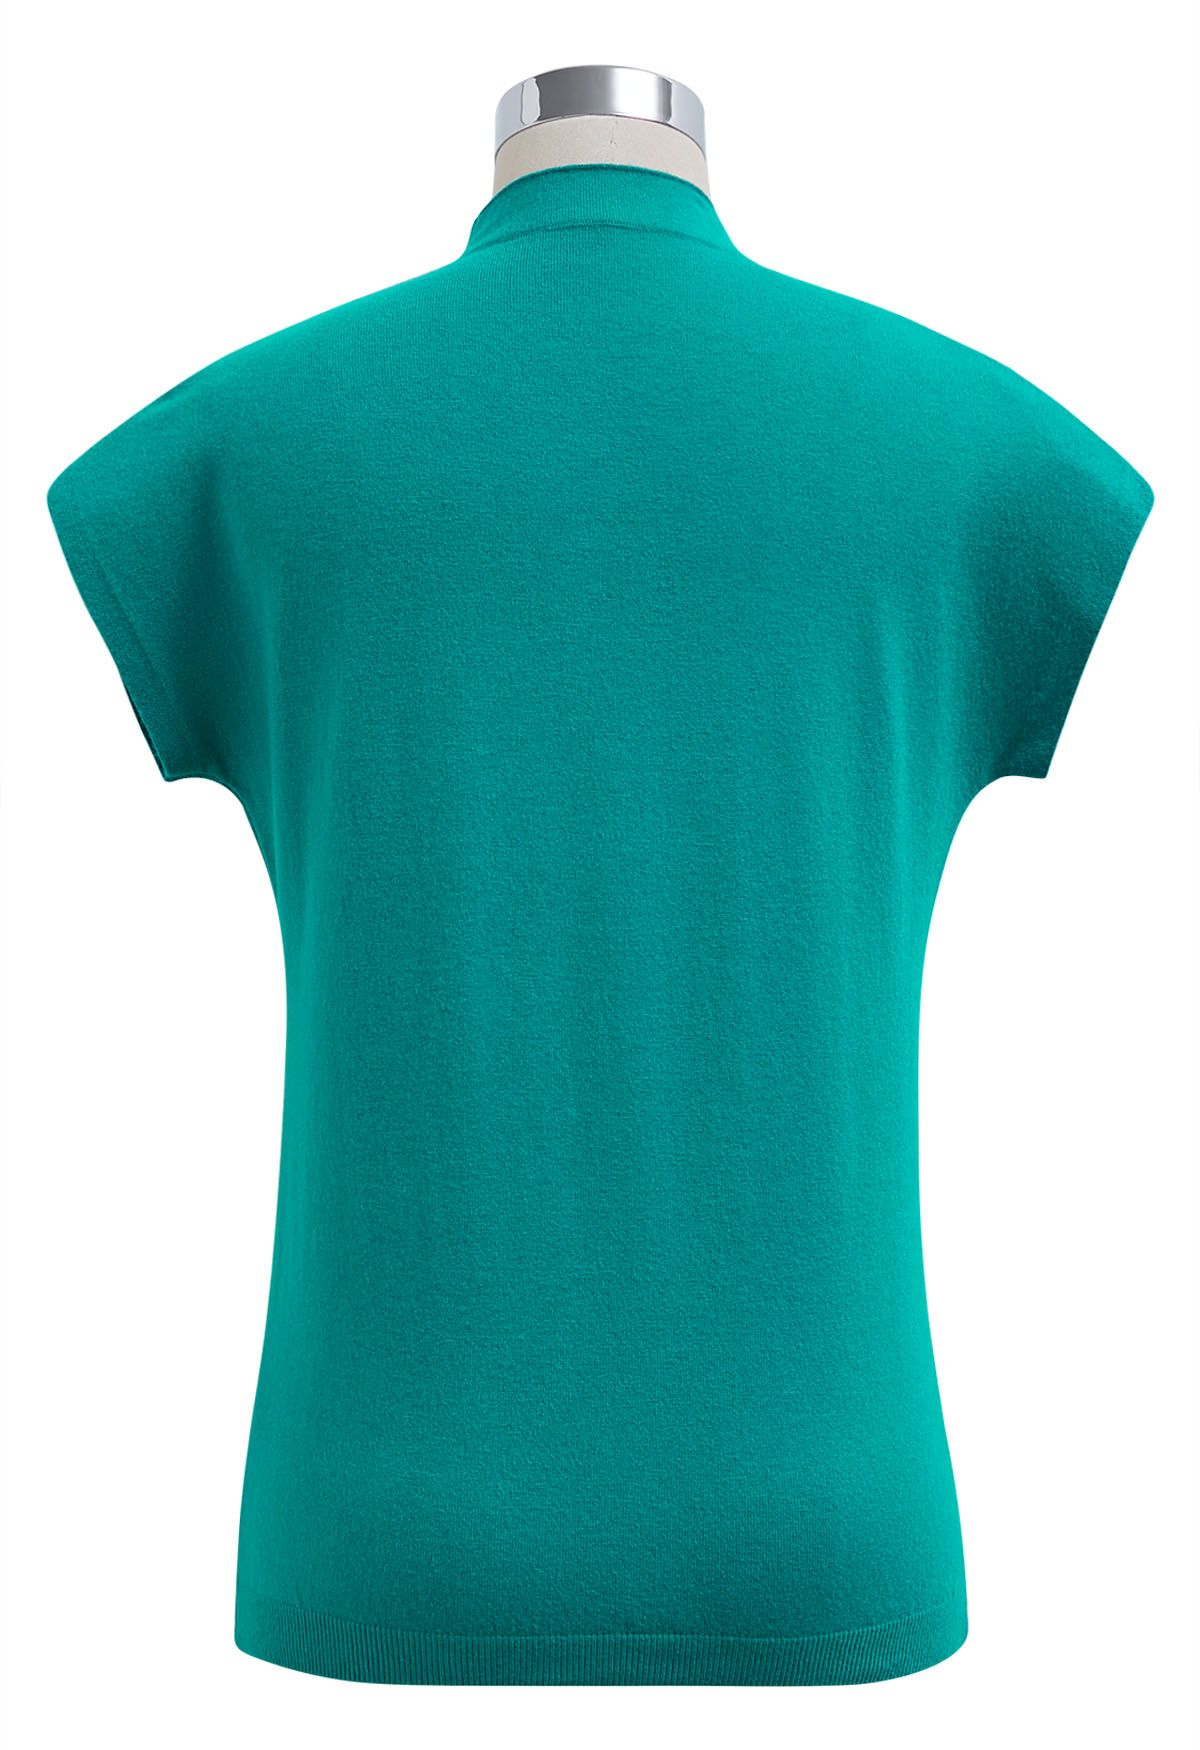 Haut en tricot à manches courtes de couleur unie en turquoise